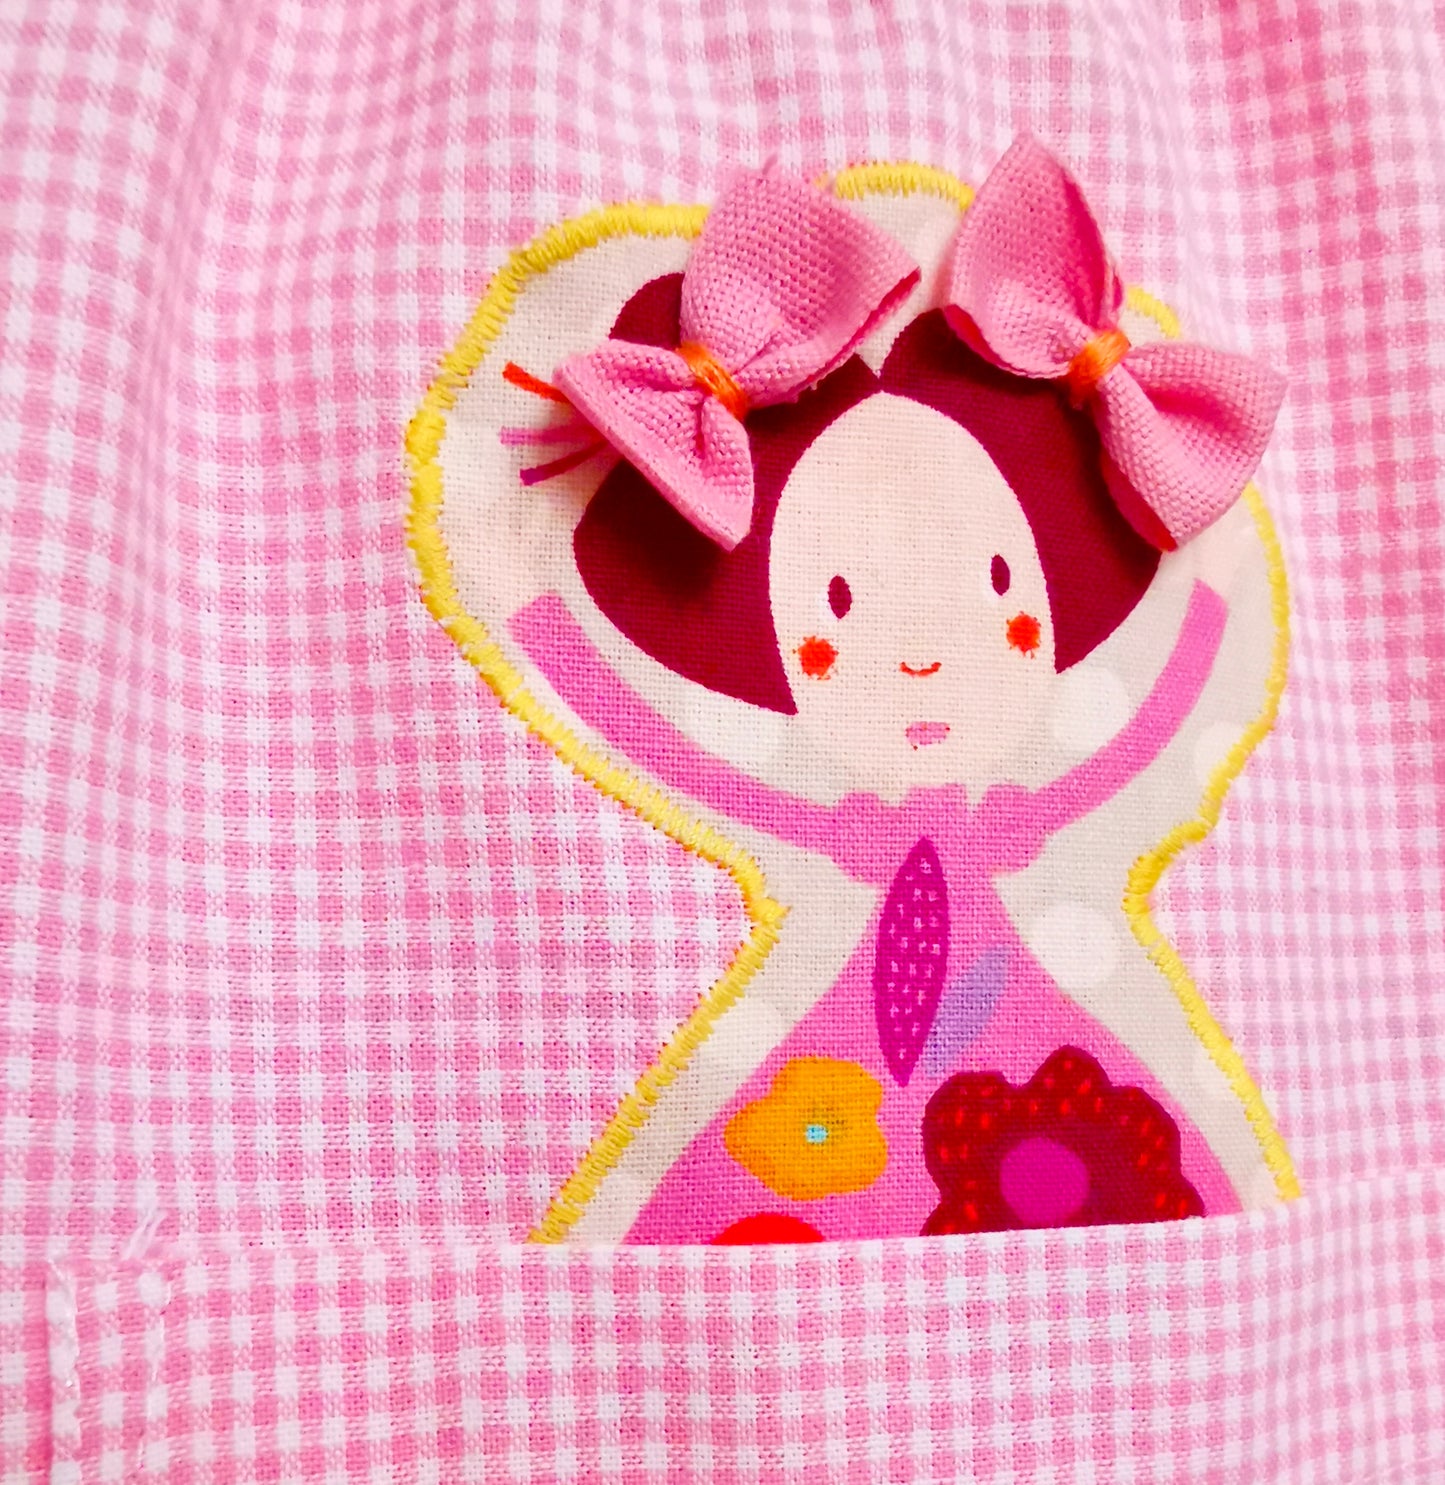 Il grembiulino con le bamboline - Grembiule a quadrettini rosa per asilo con colletto pierrot